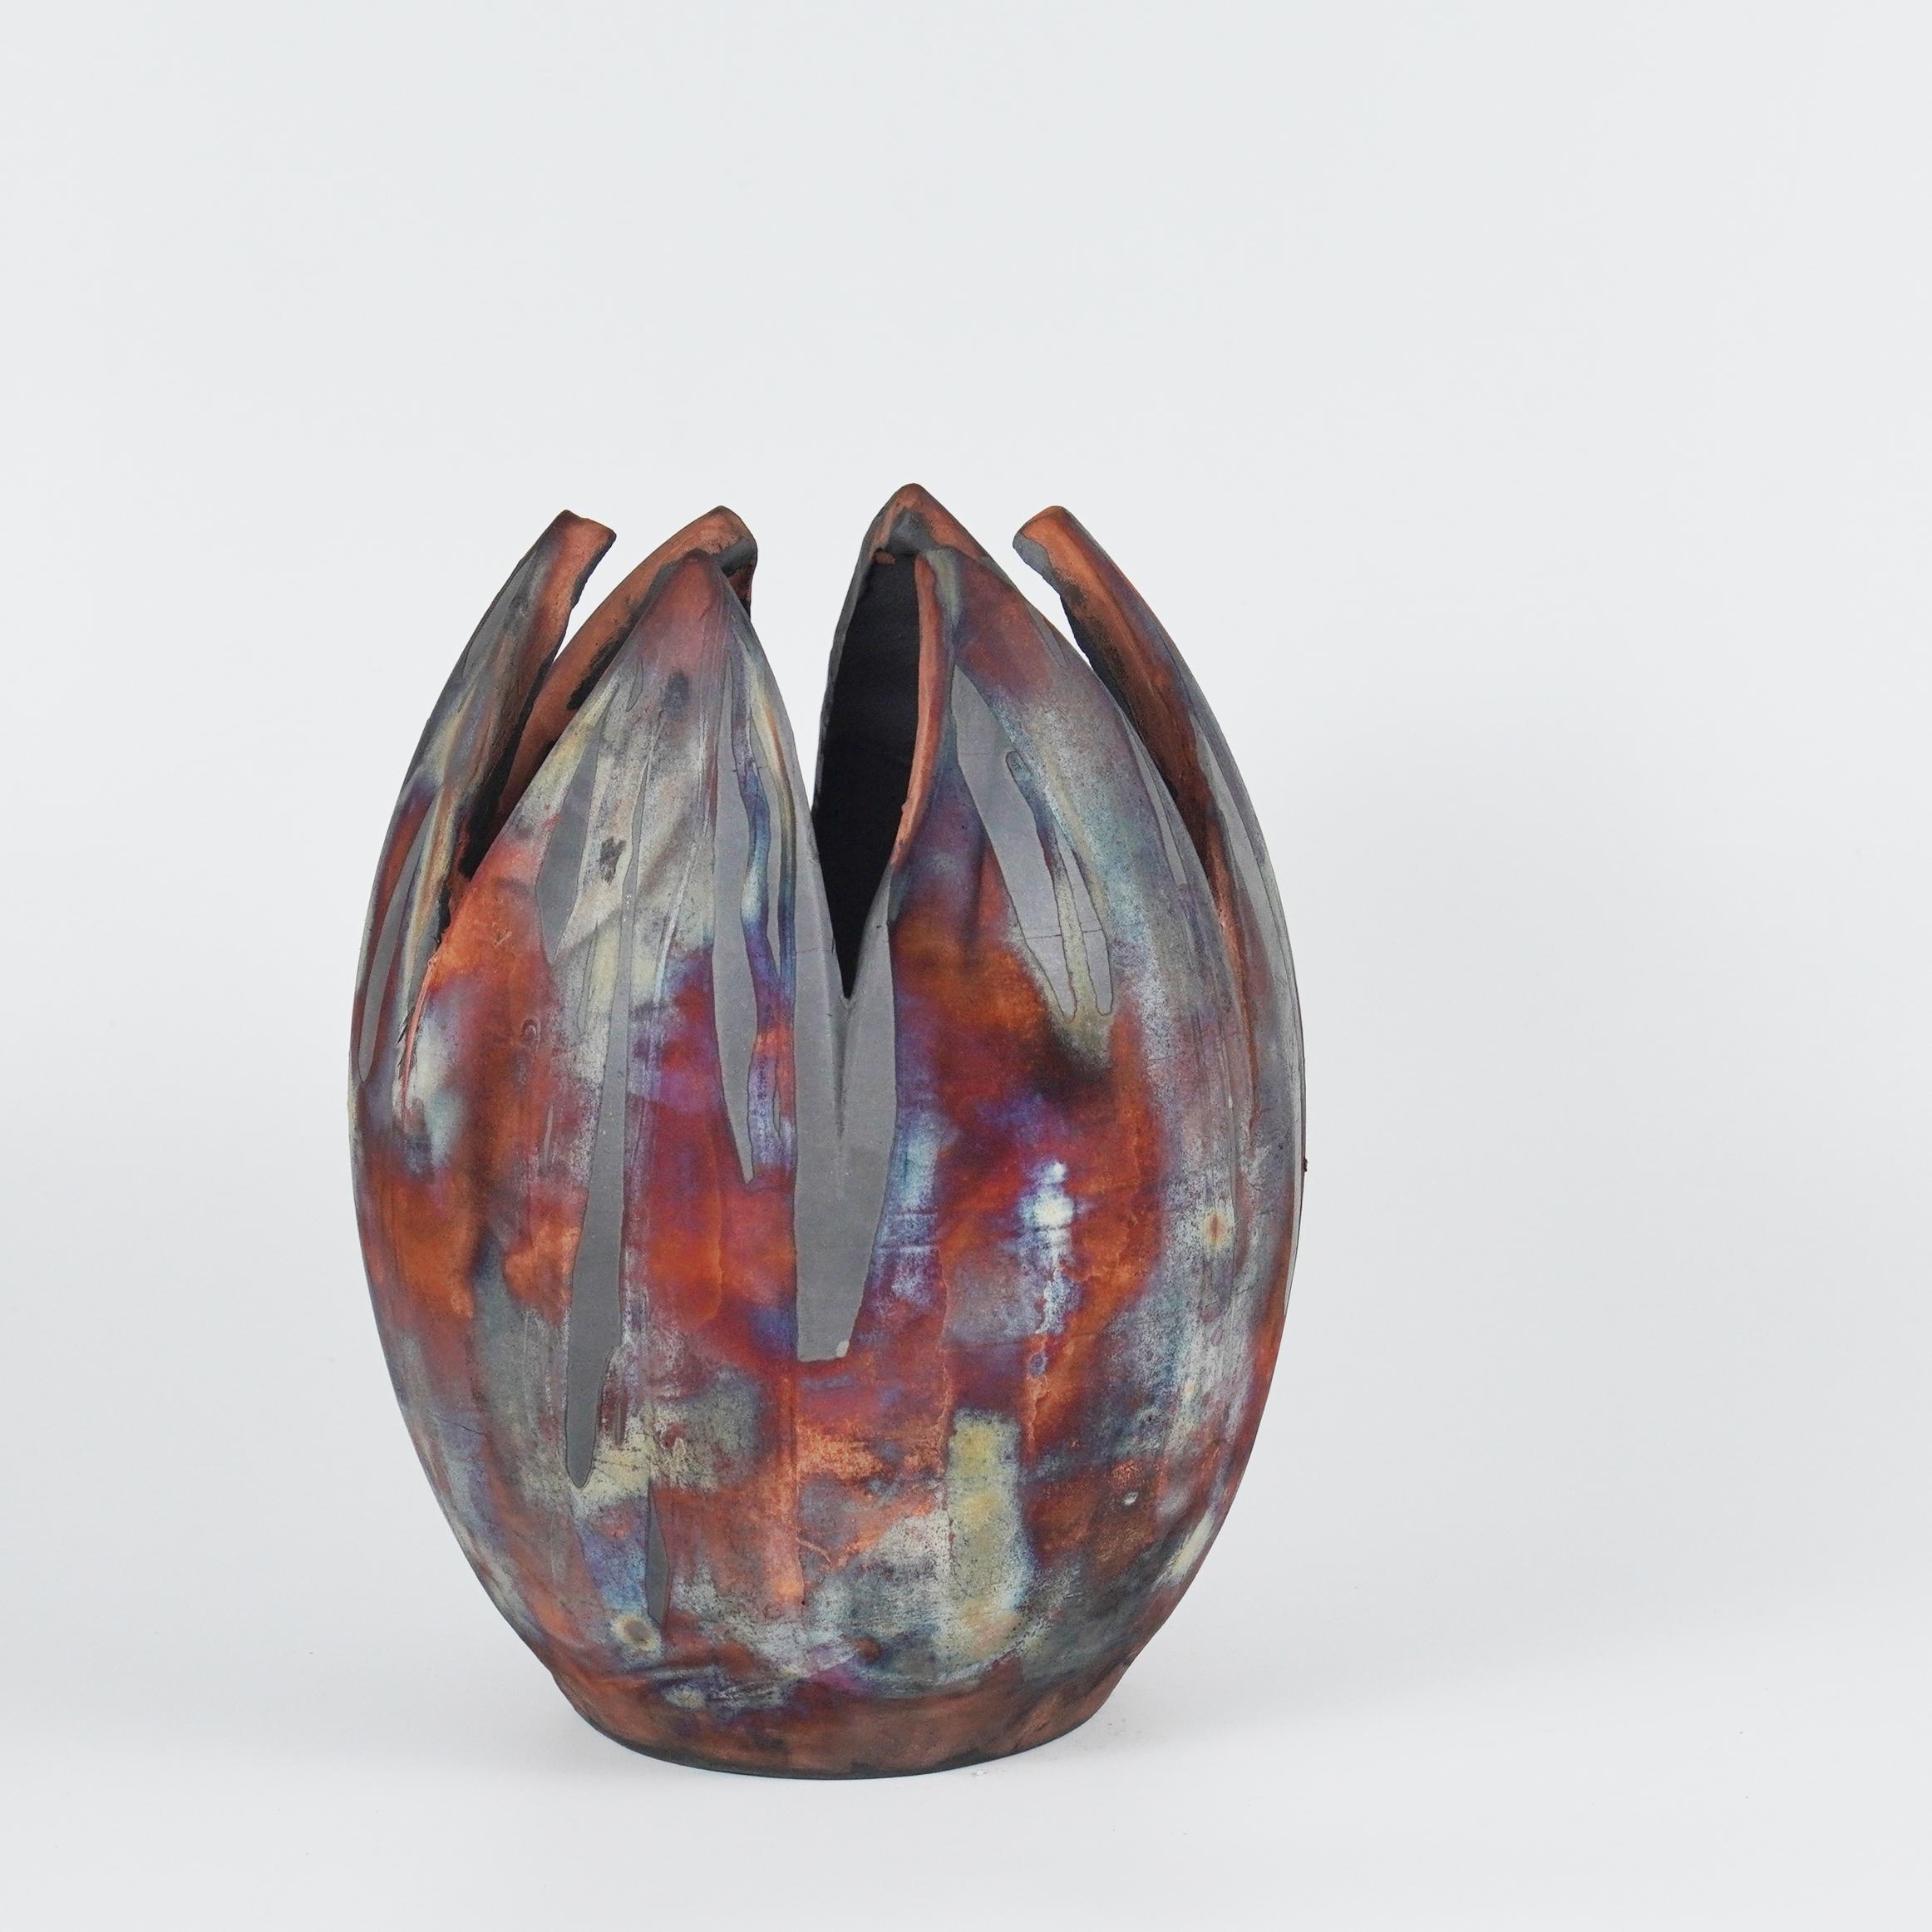 Die Form der RAAQUU Flower Vase ist von der Tulpenblüte inspiriert und verleiht der ovalen Vase mit 6 halben Blütenblättern einen wunderbaren Regenbogenschimmer. Diese Vase erfordert eine präzise Formgebung und ist meine bisher komplizierteste